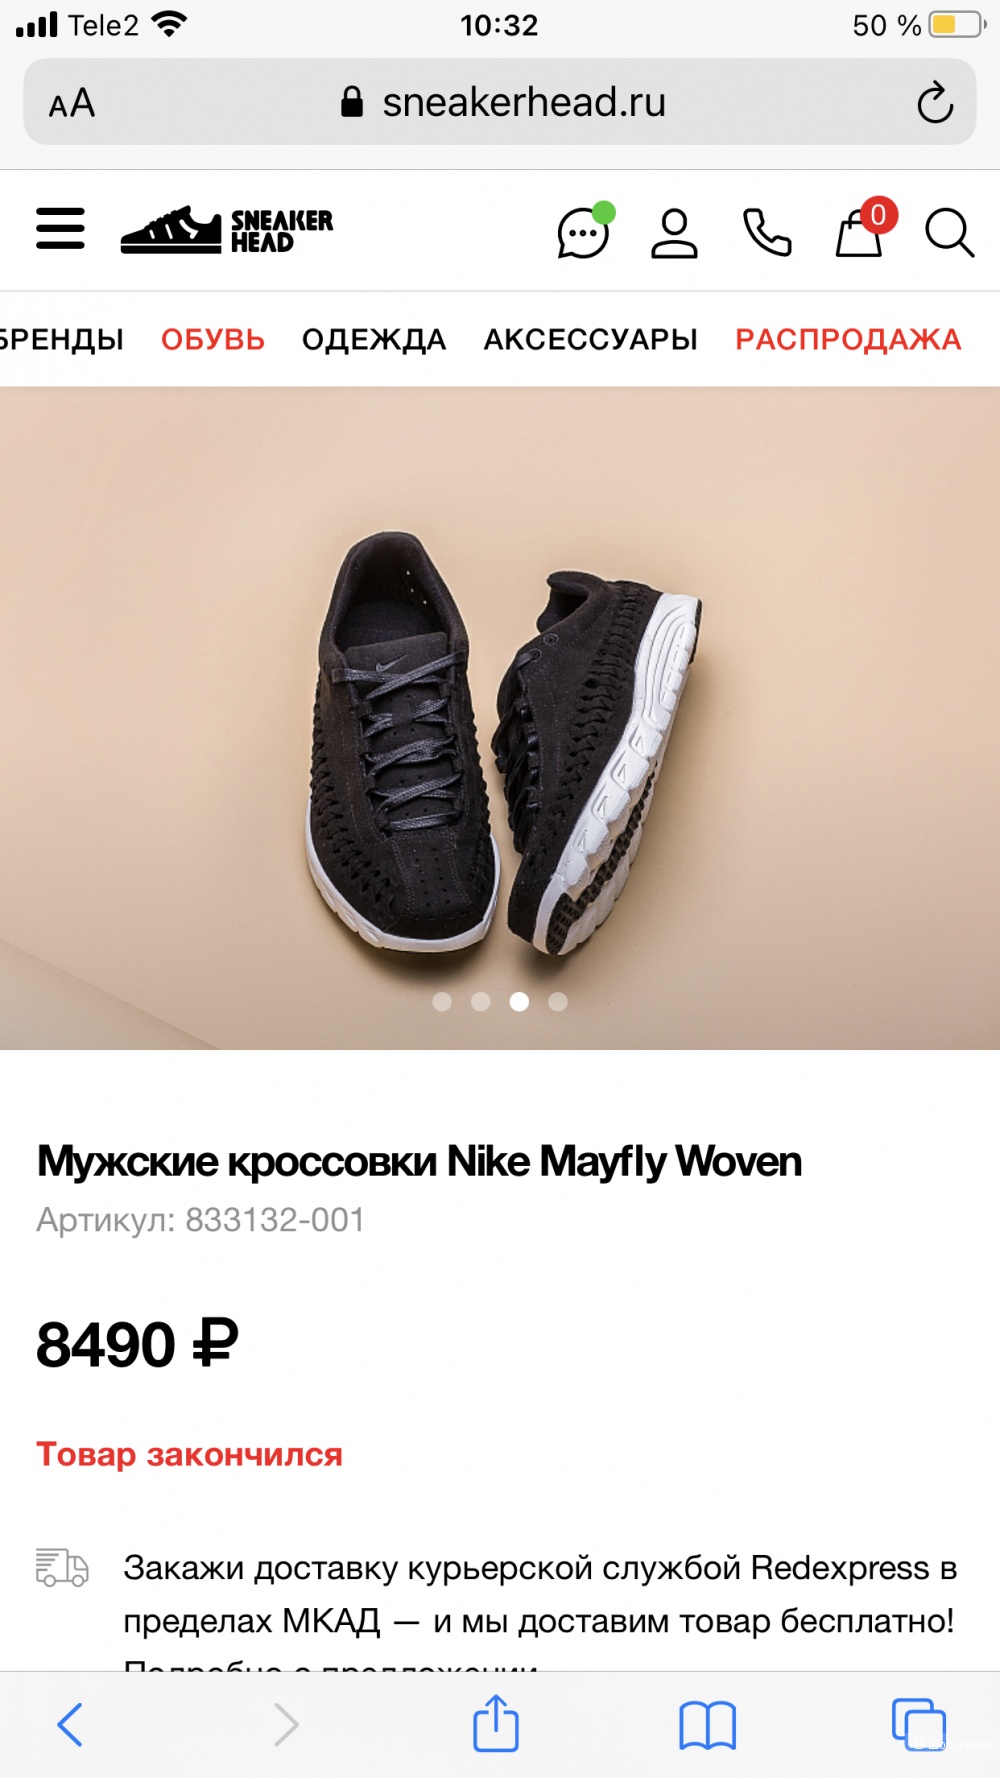 Мужские кроссовки Nike Mayfly Woven, 11US, 28.5см стелька